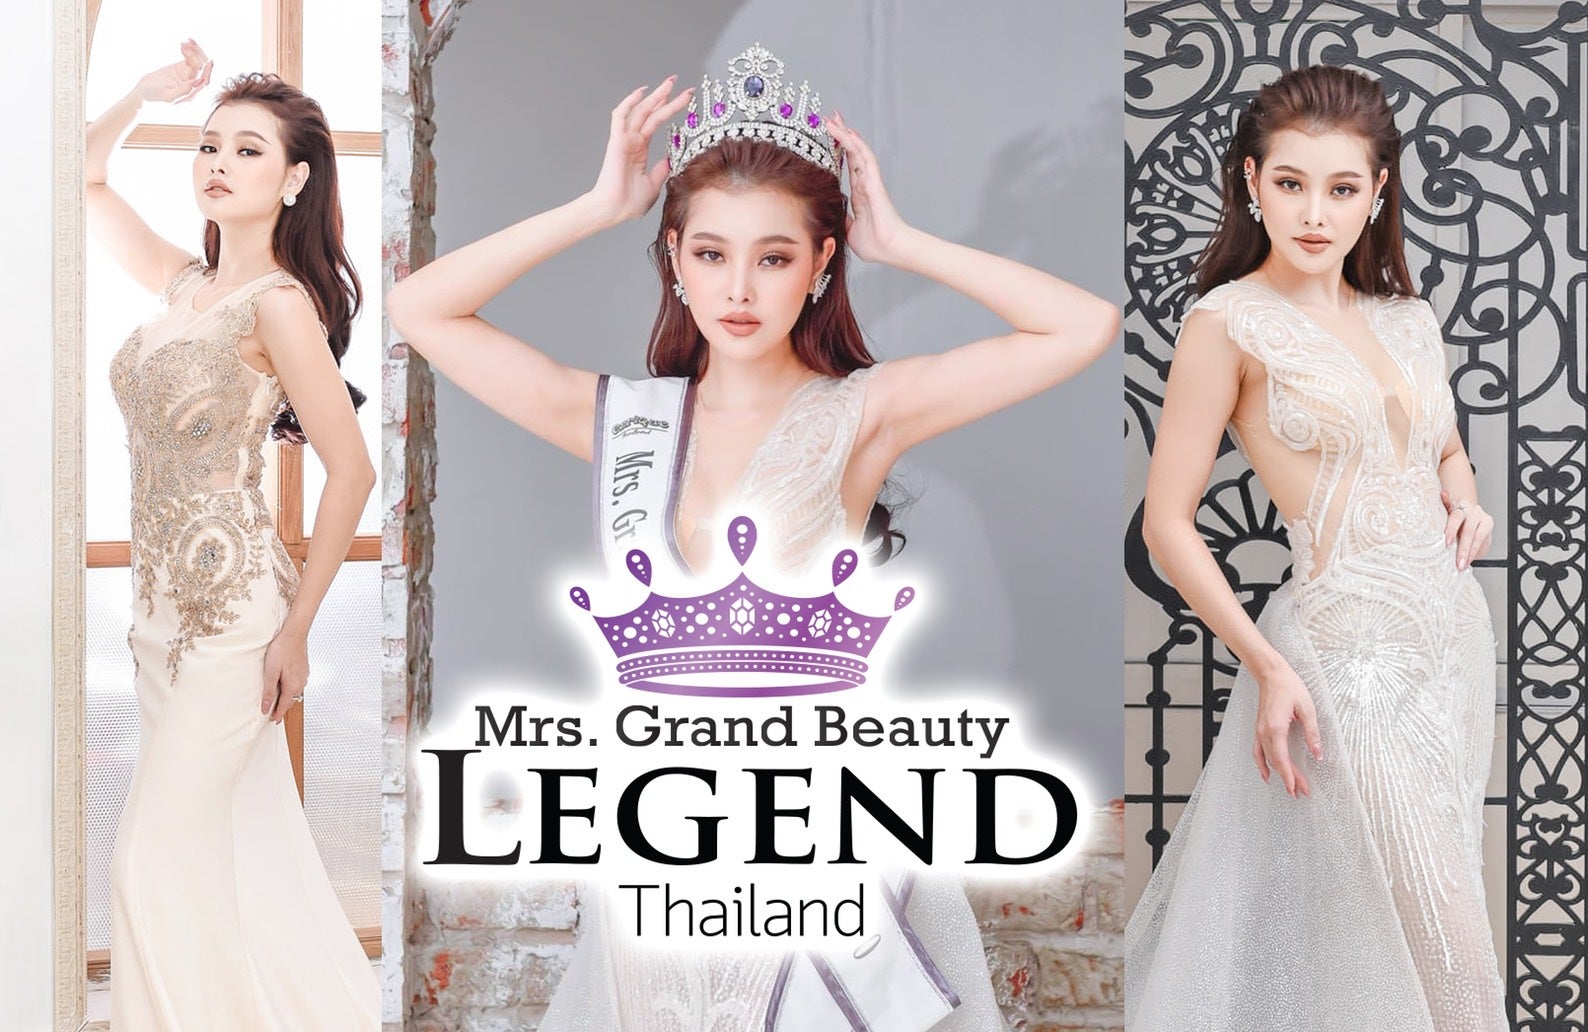 Mrs. Grand Beauty Legend Thailand 2020